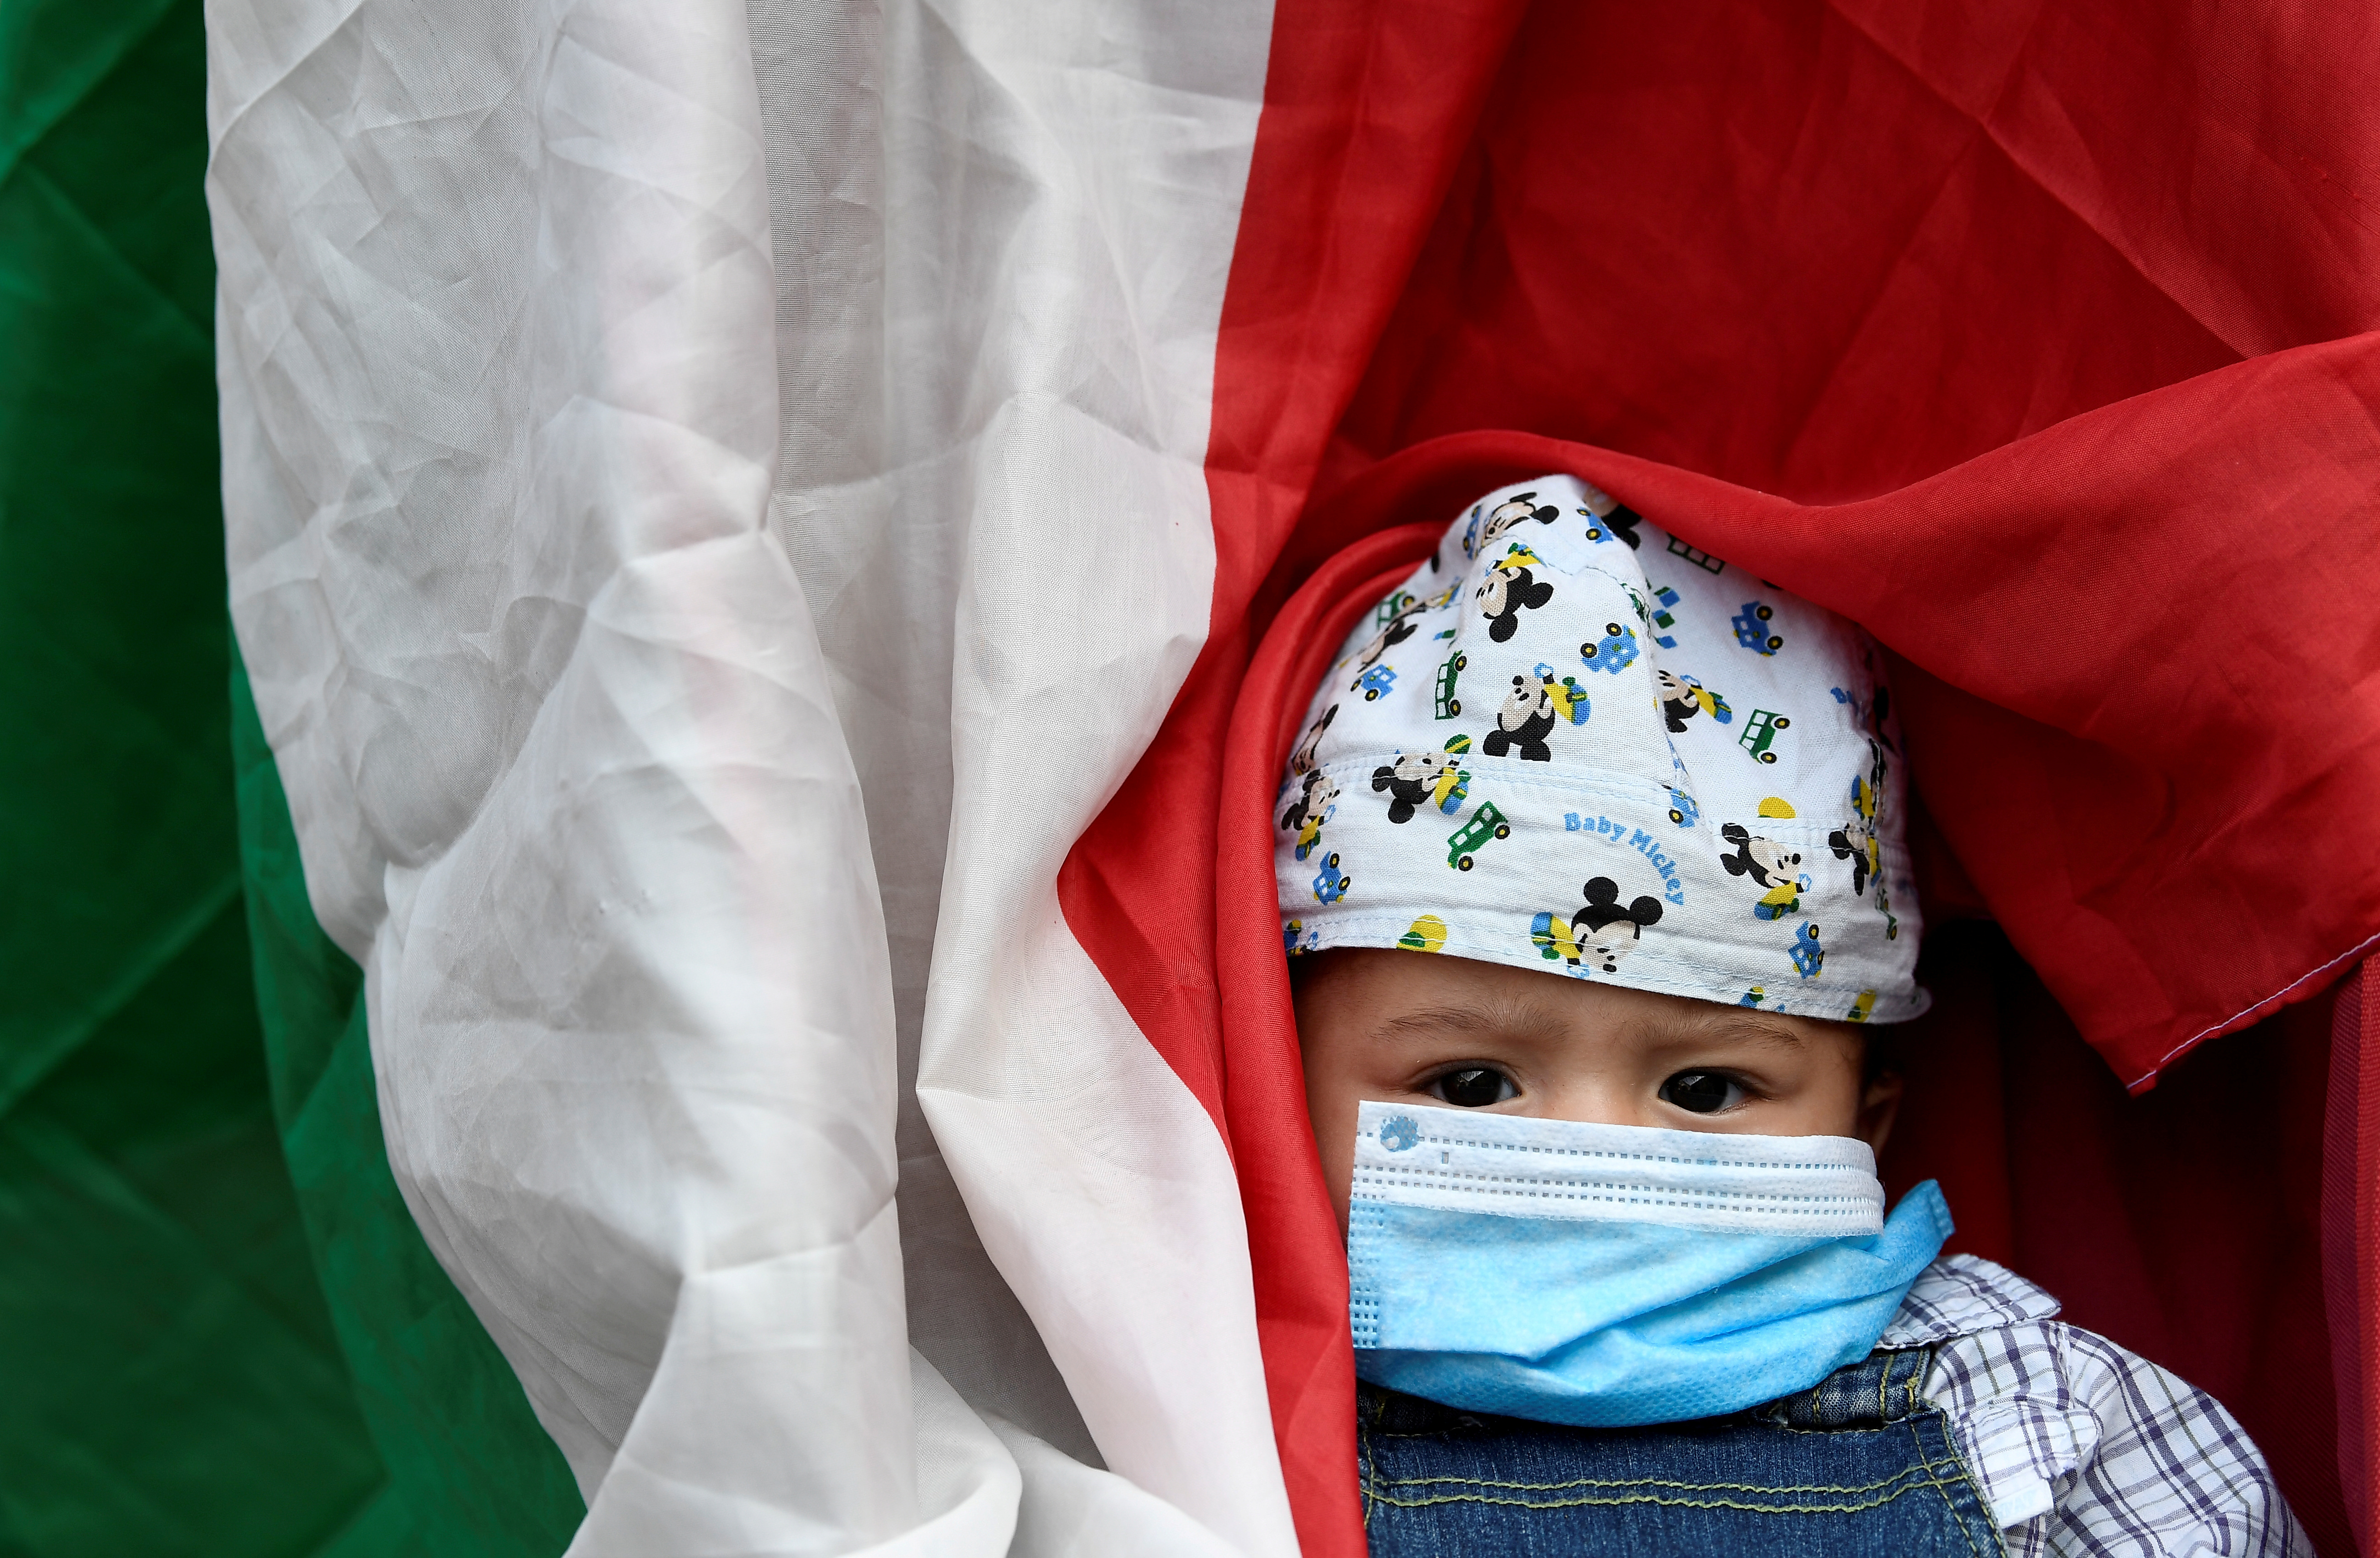 ARCHIVO FOTOGRÁFICO: Un niño con una máscara protectora es visto junto a la bandera italiana durante una protesta frente al ayuntamiento de Milán el 18 de mayo de 2020. REUTERS/Flavio Lo Scalzo